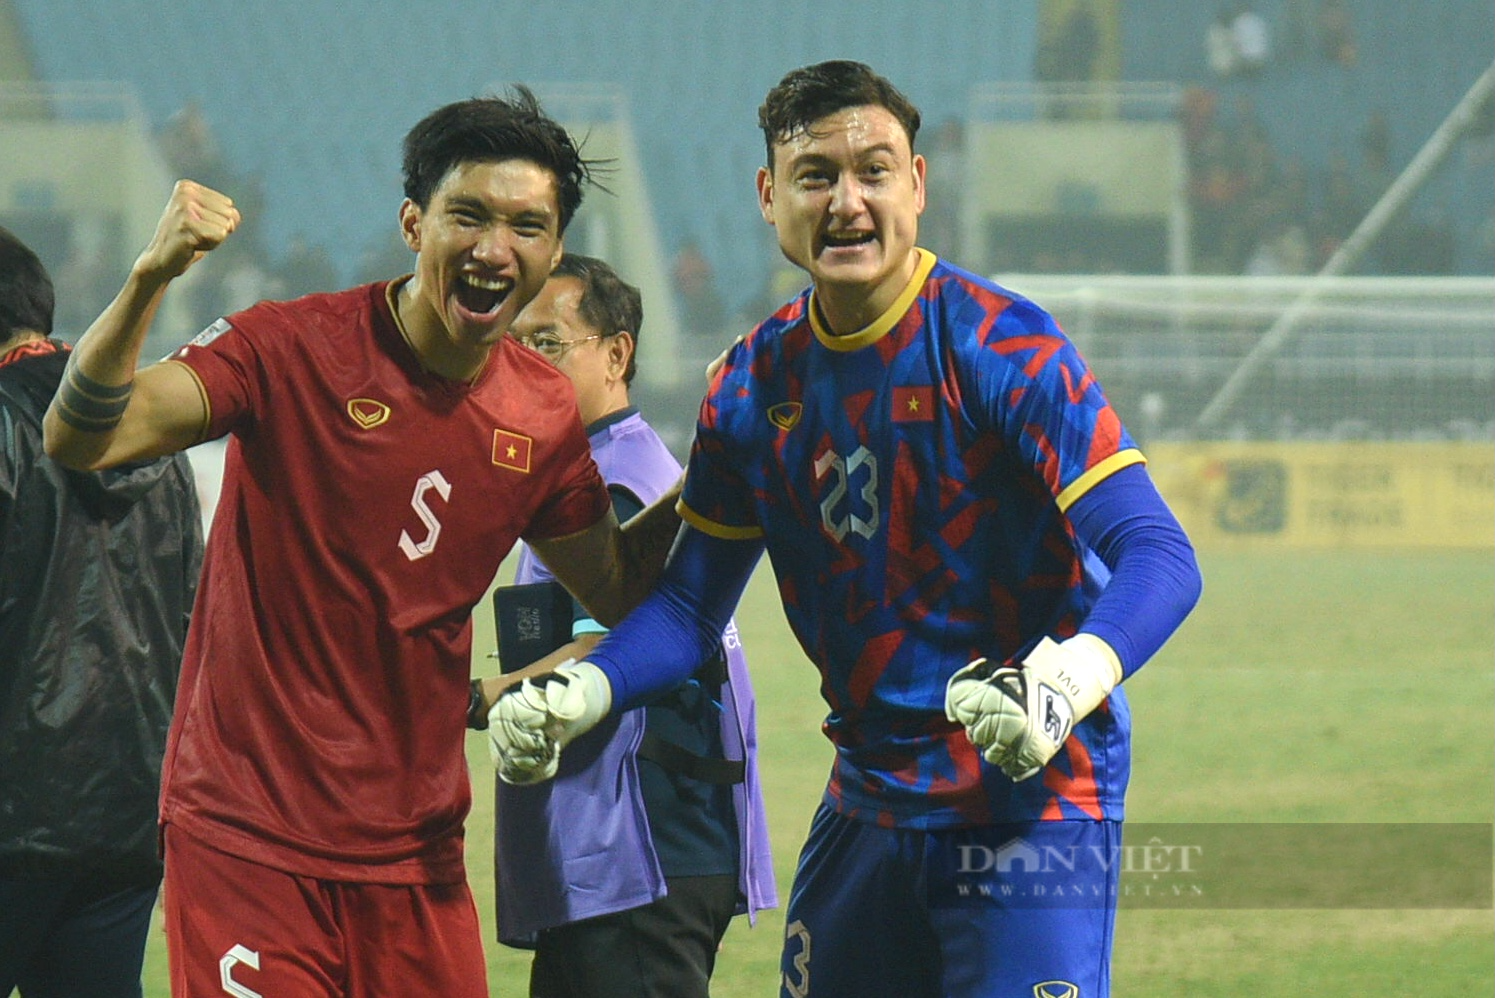 CĐV ăn mừng kiểu Viking sau khi đội tuyển Việt Nam giành quyền vào chơi chung kết AFF Cup 2022 - Ảnh 9.